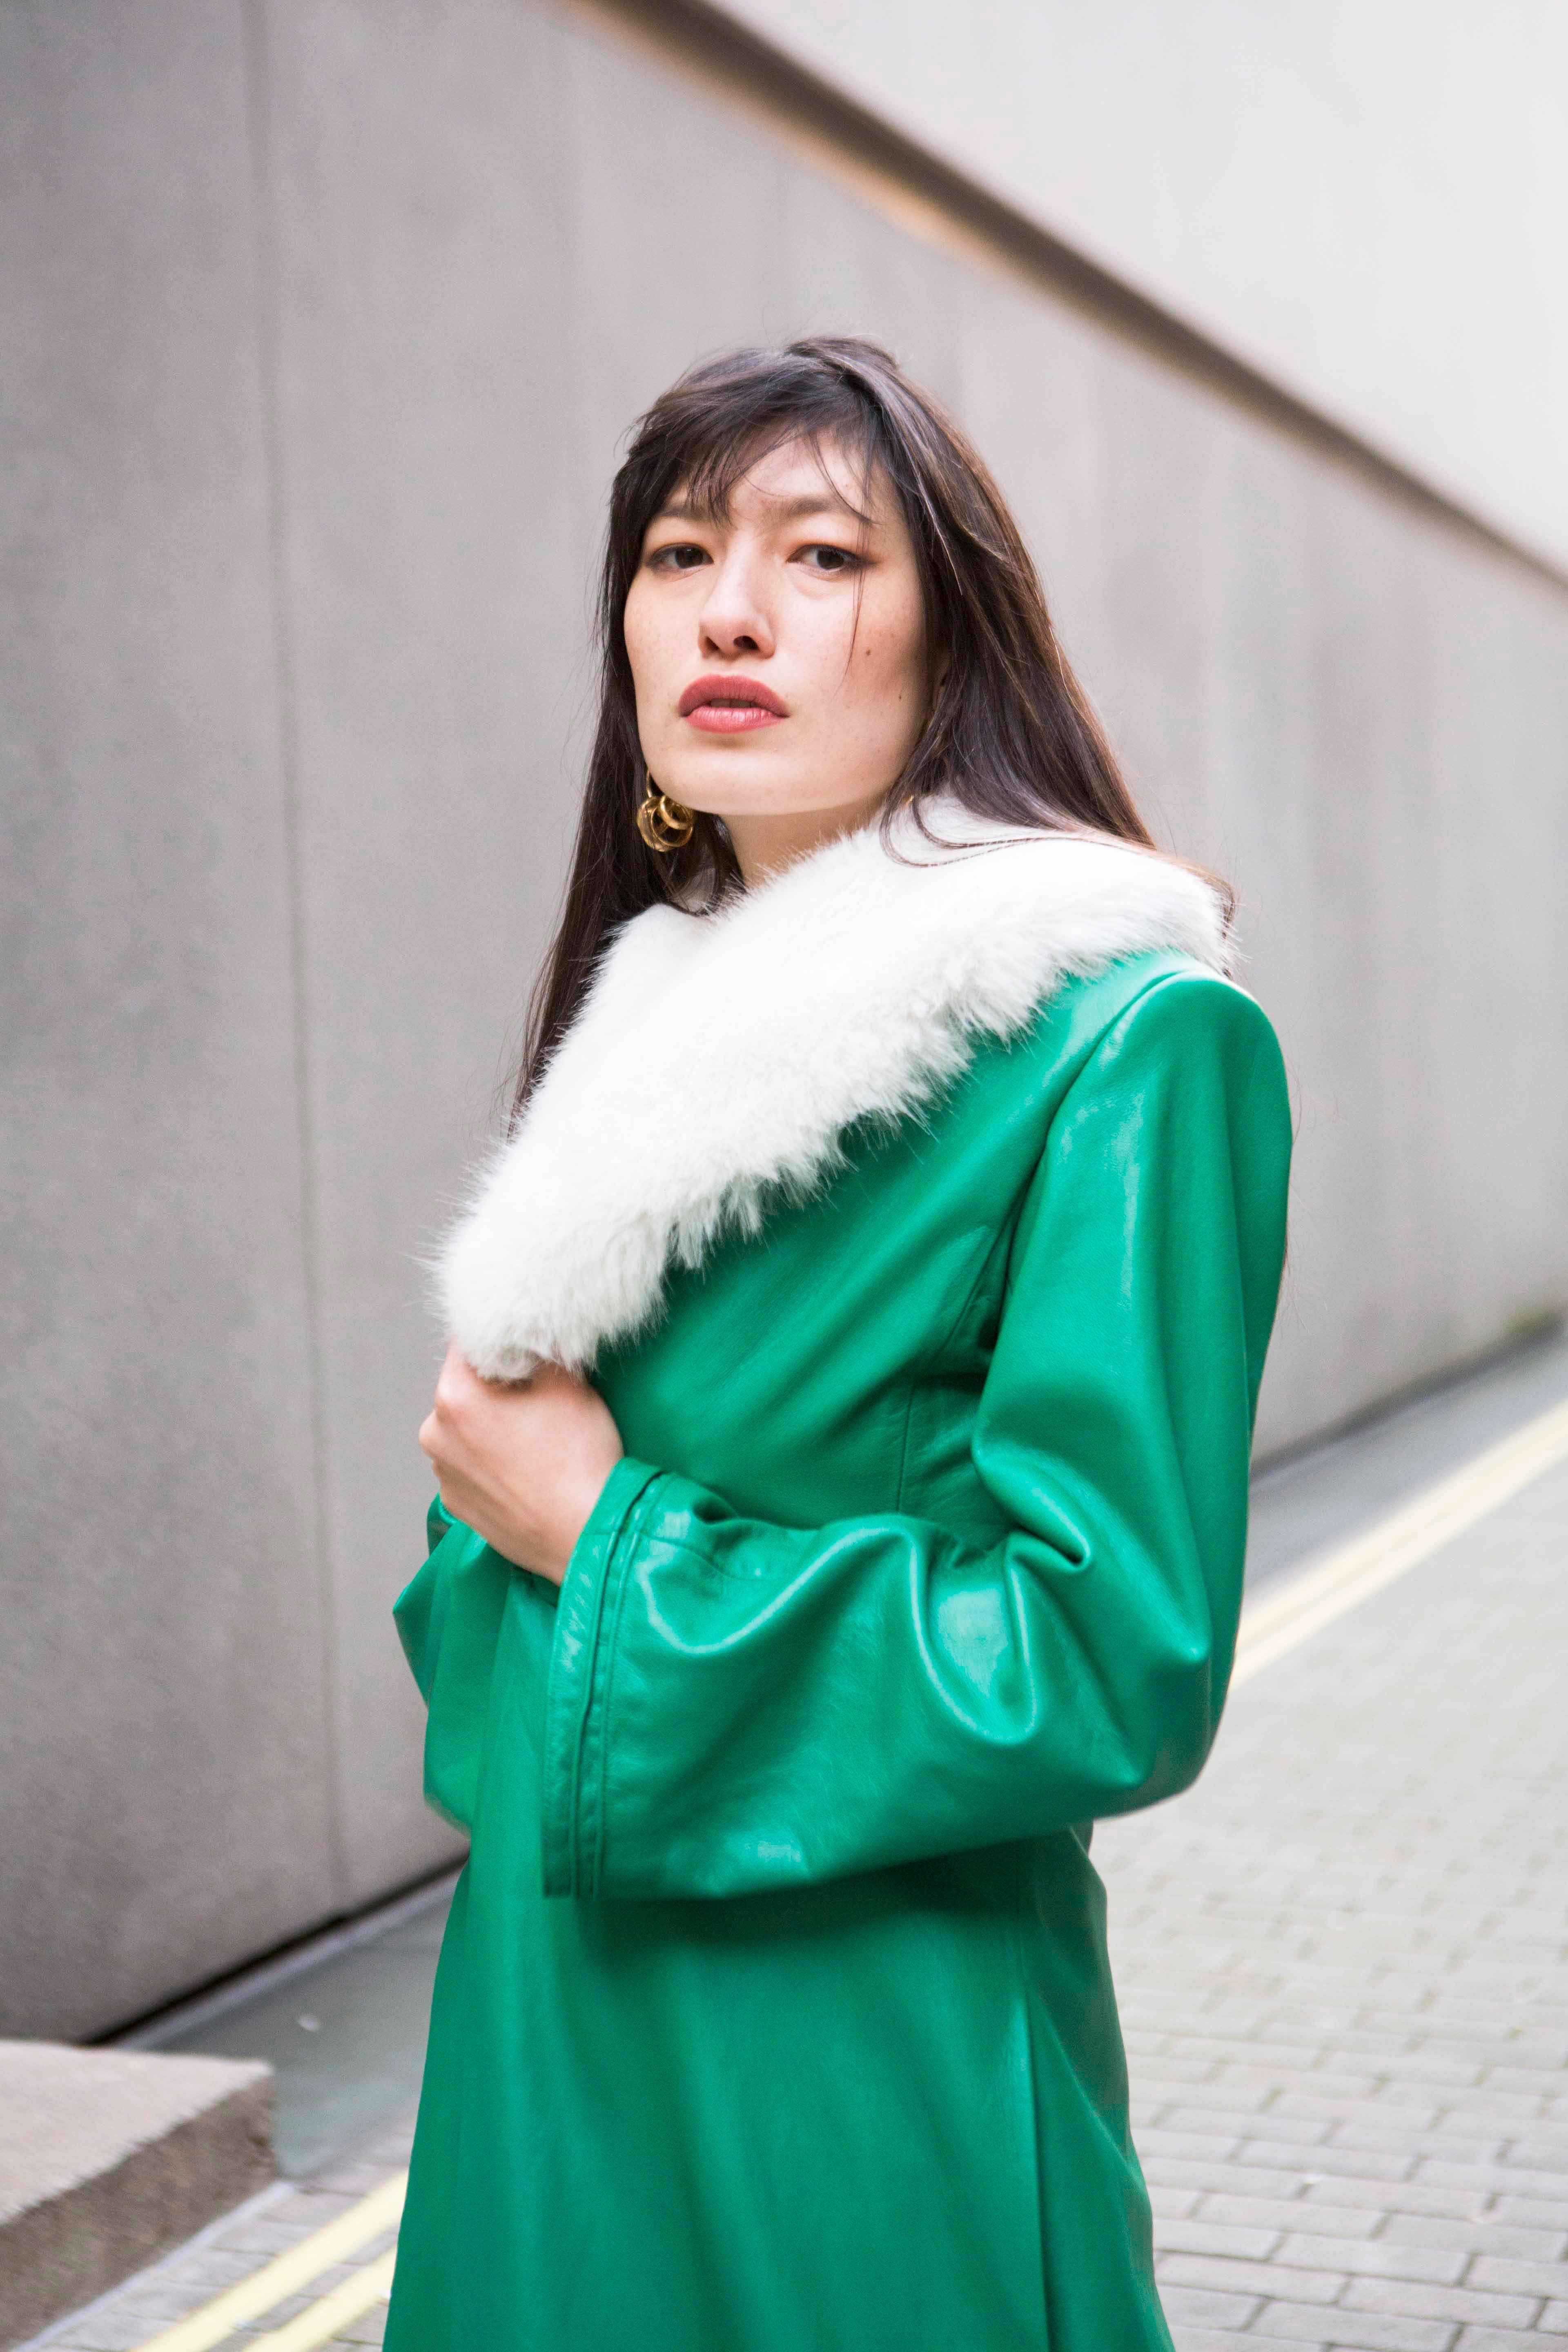 Verheyen London Edward Leather Coat in Green & White Faux Fur - Size 8 UK  For Sale 9